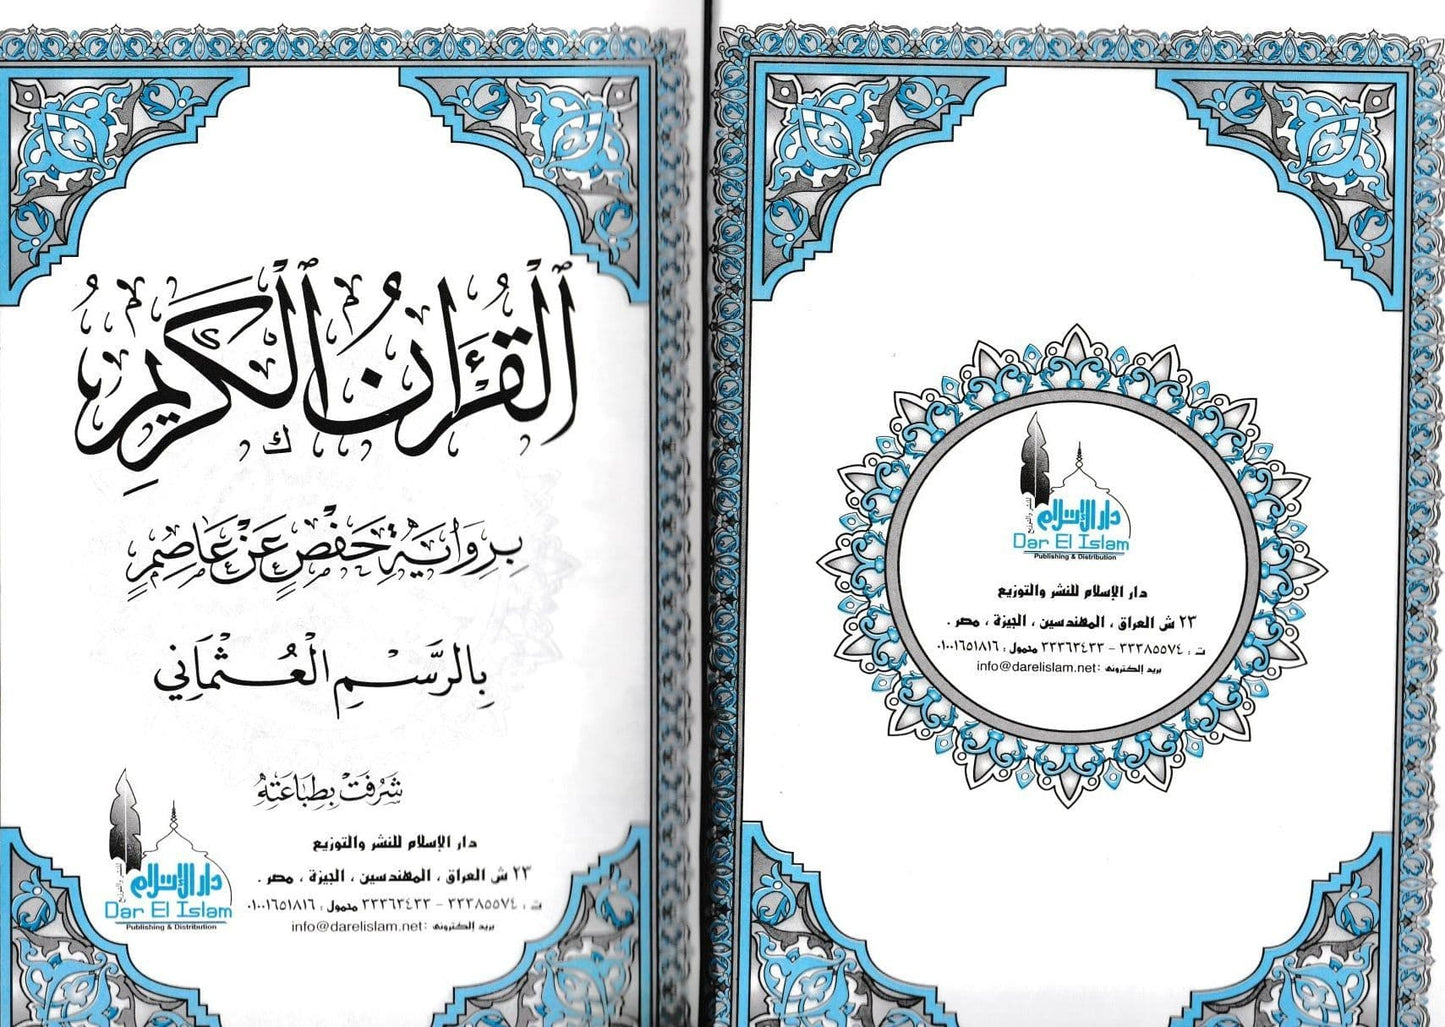 القرآن الكريم برواية حفص عن عاصم بالرسم العثماني - حجم كبير